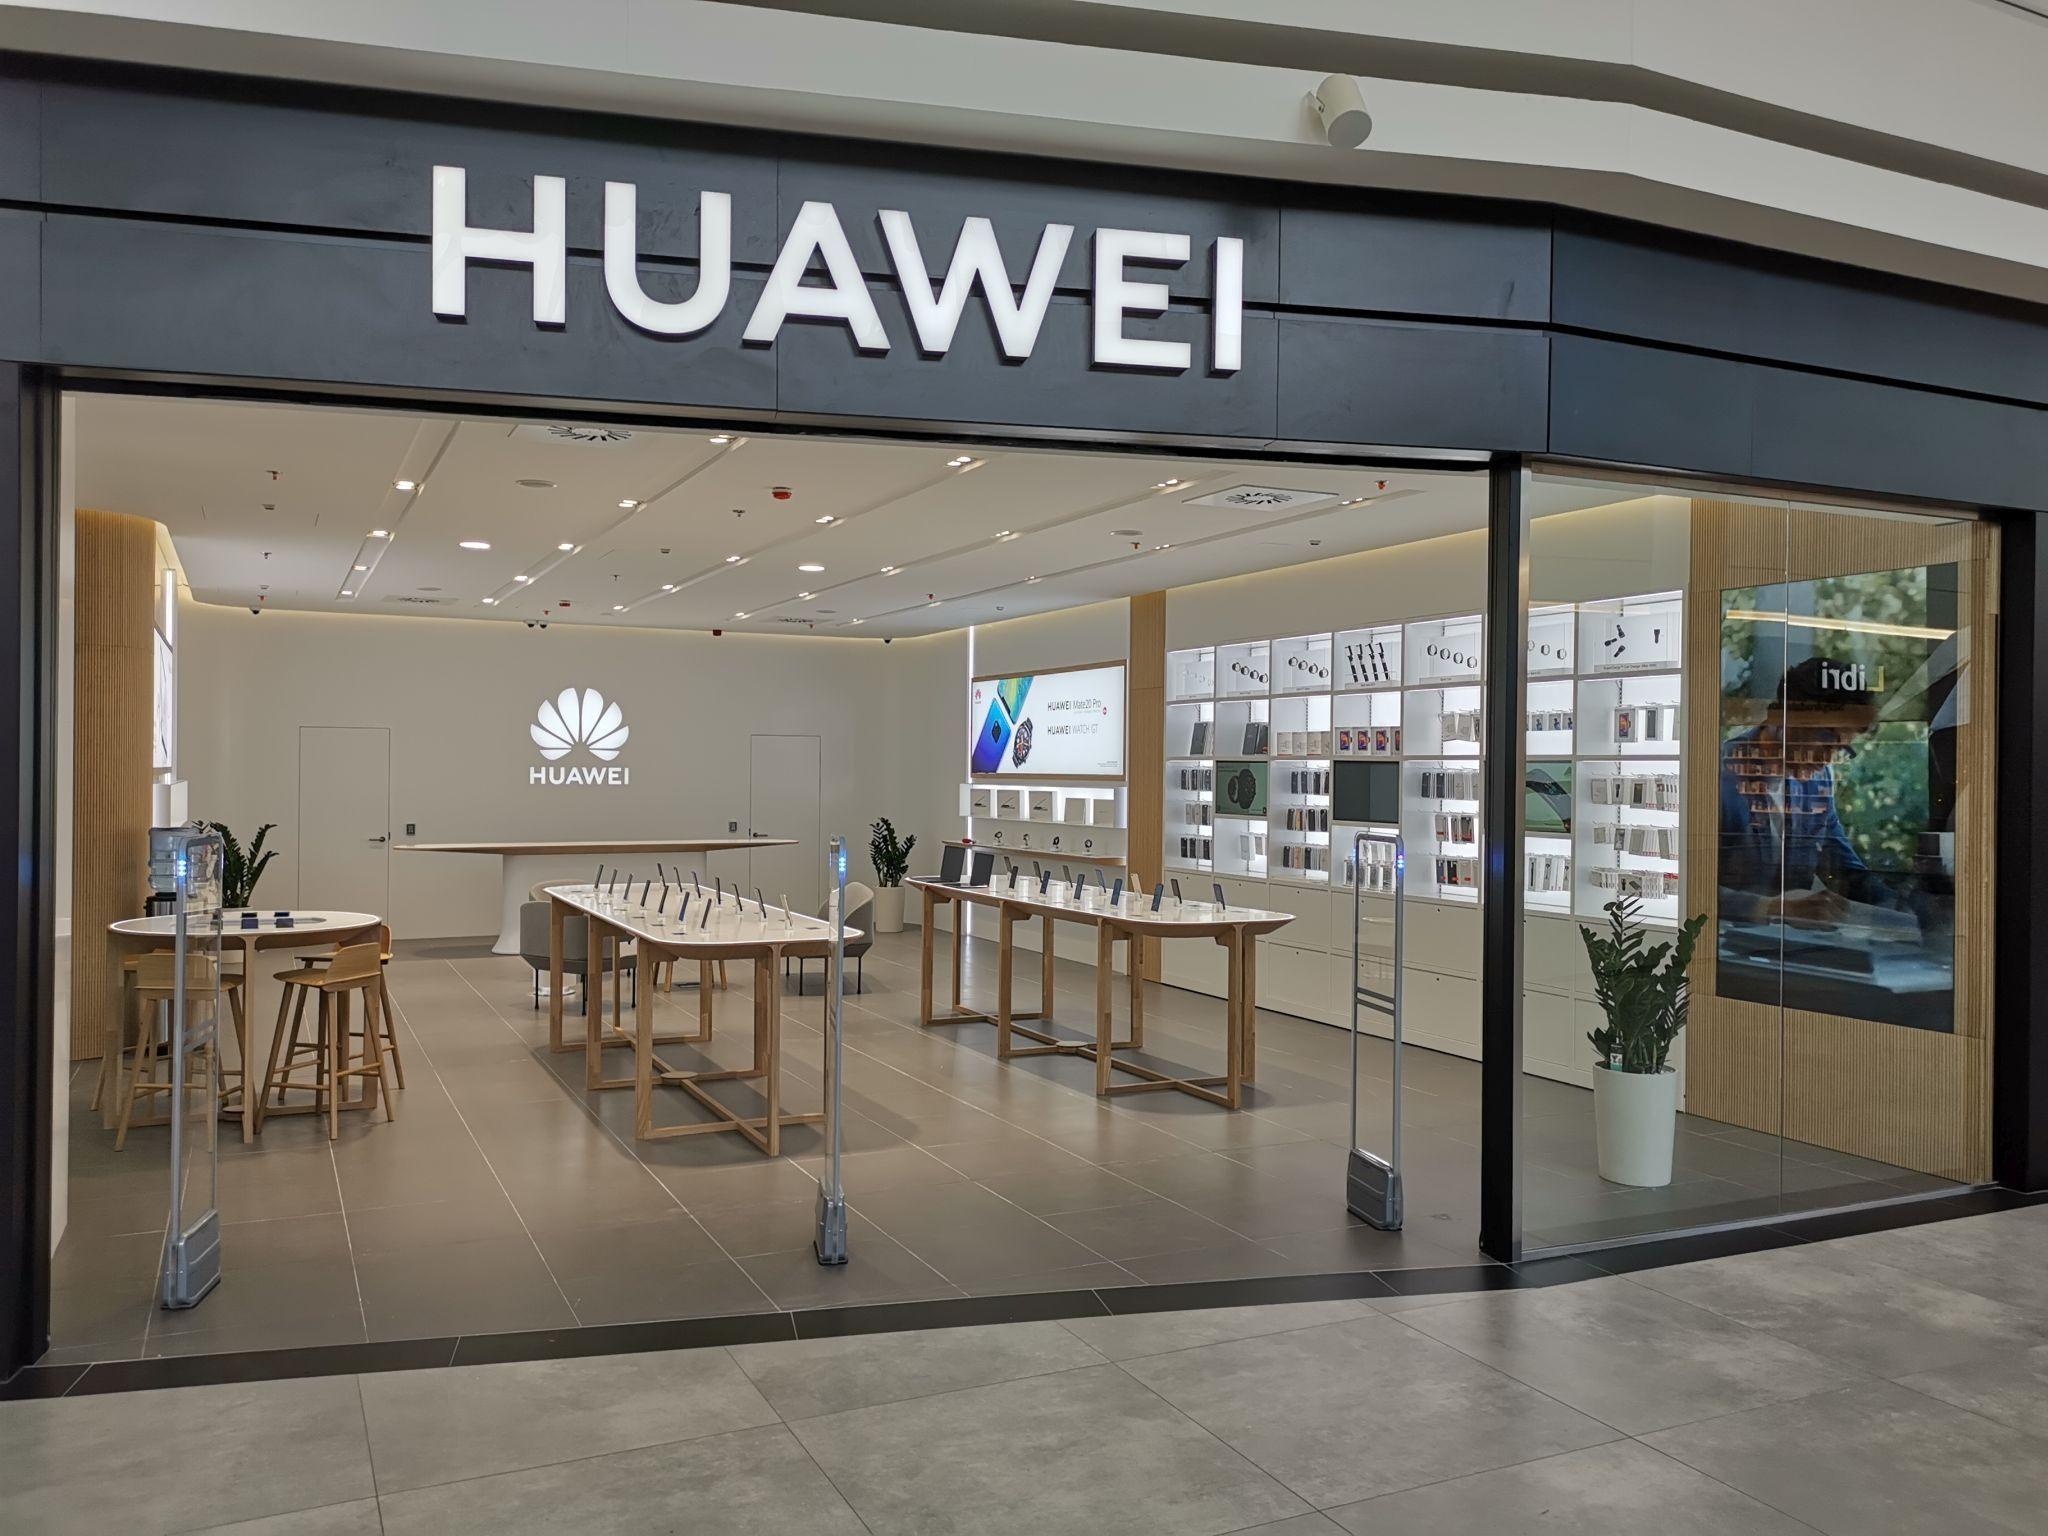 Купить huawei в магазине. Huawei. Huawei магазин. Huawei магазин в Москве. Вывеска Хуавей.